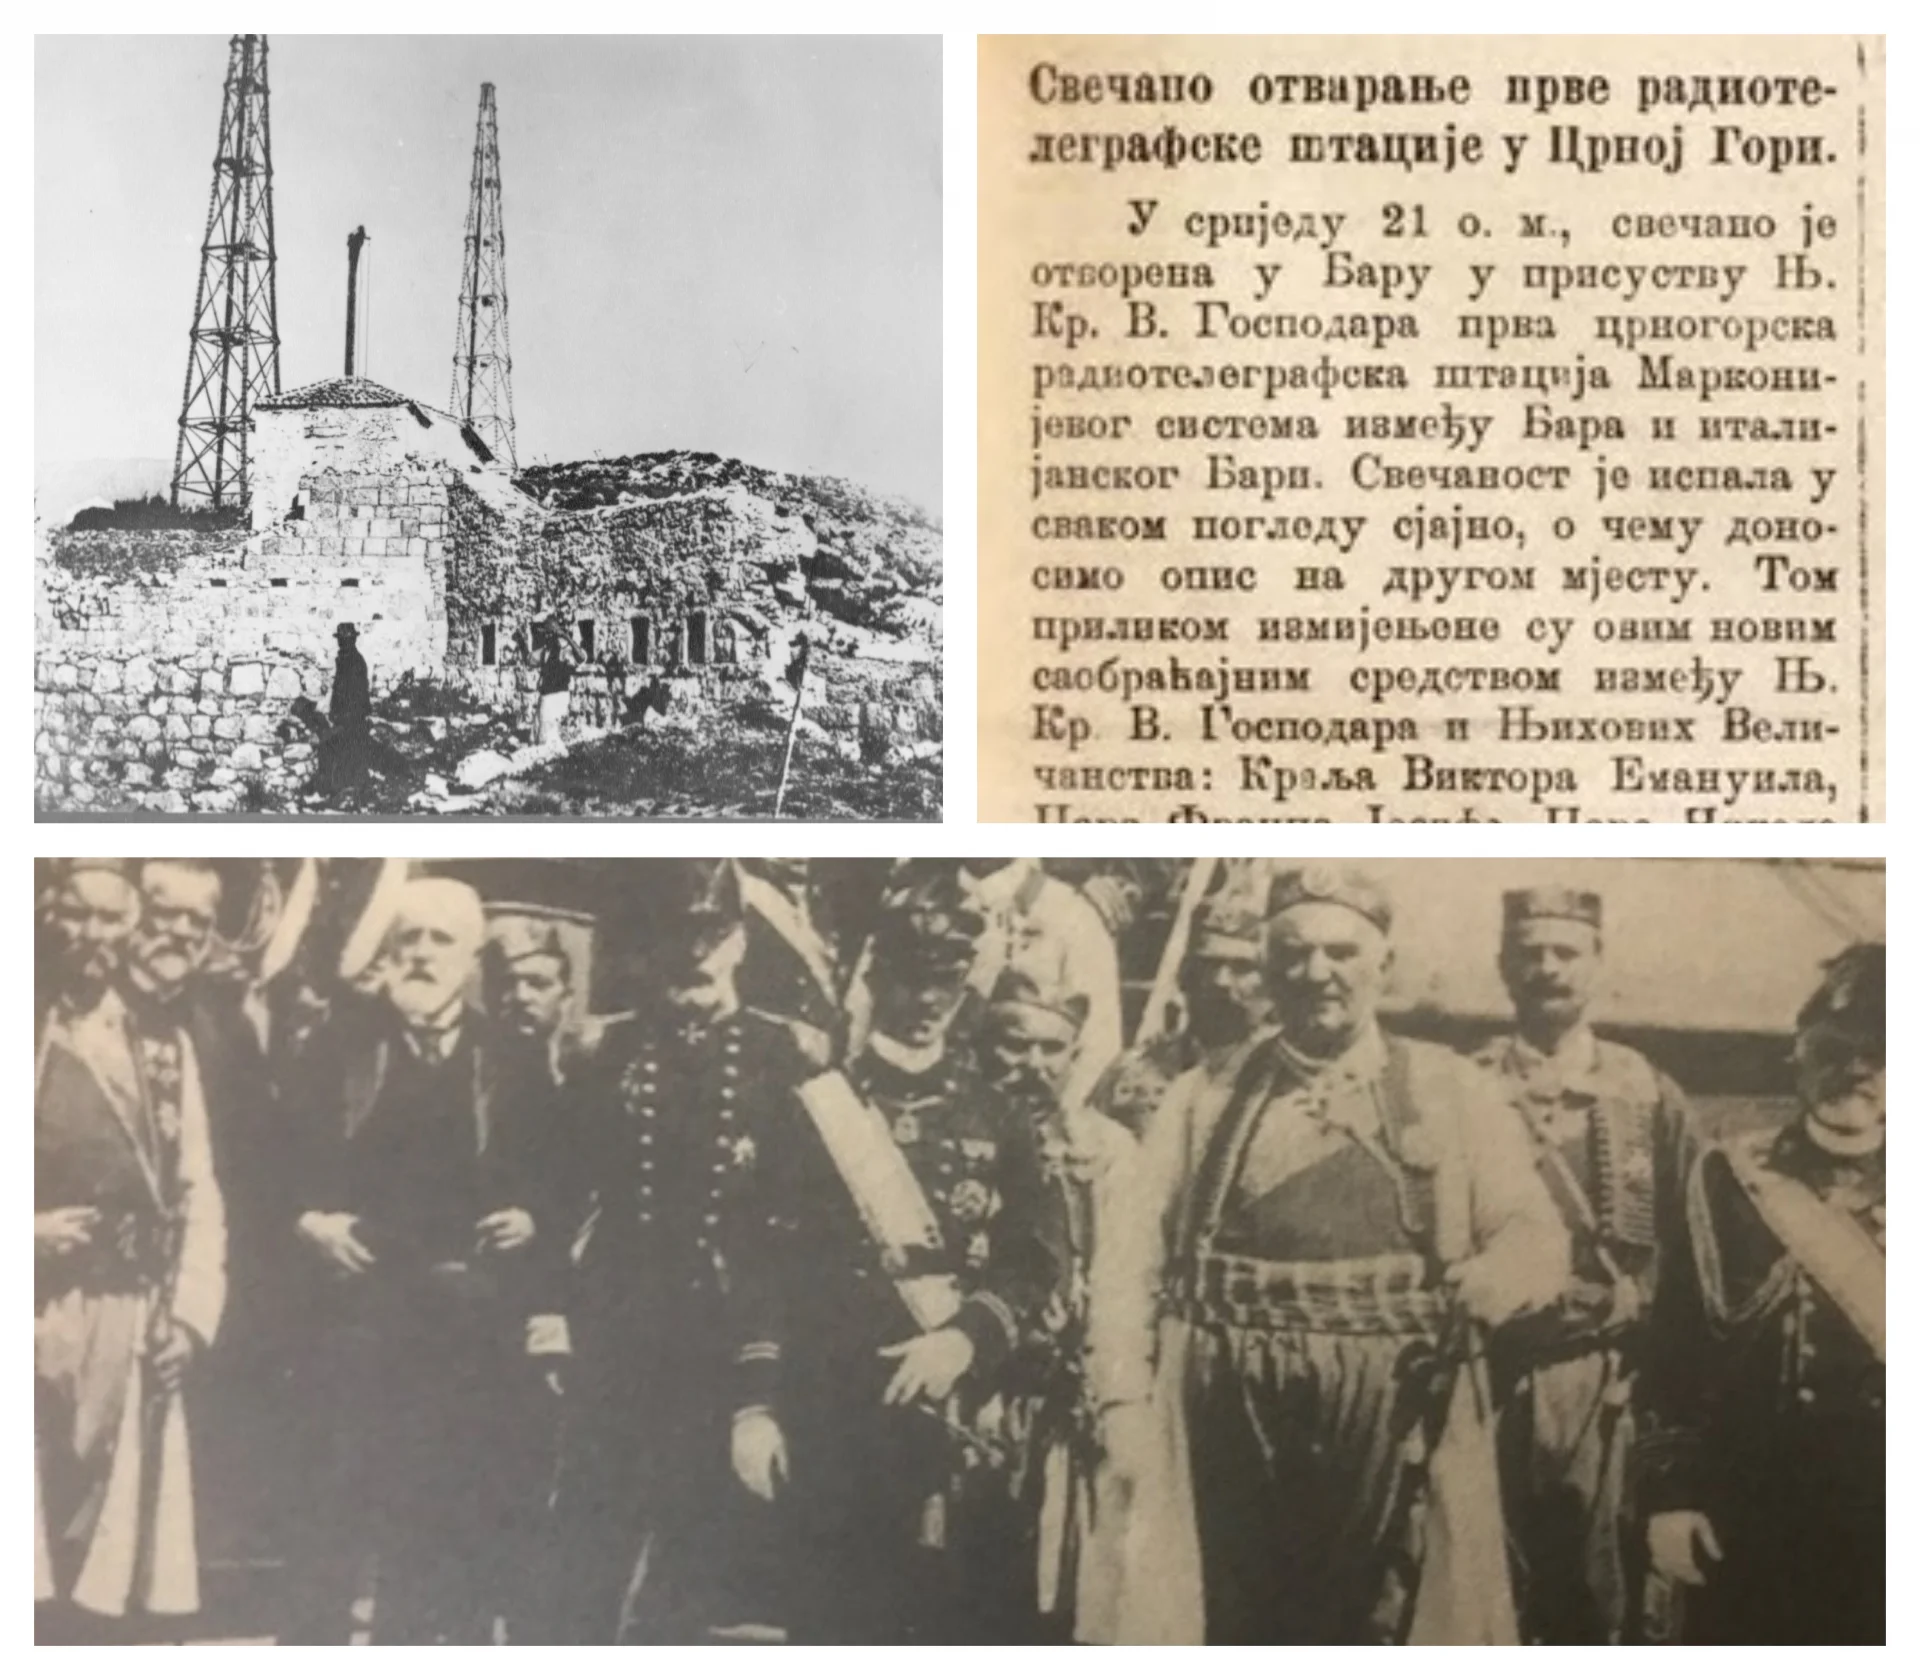 Koje je nacionalnosti bila prva radio-telegrafska stanica na Balkanu